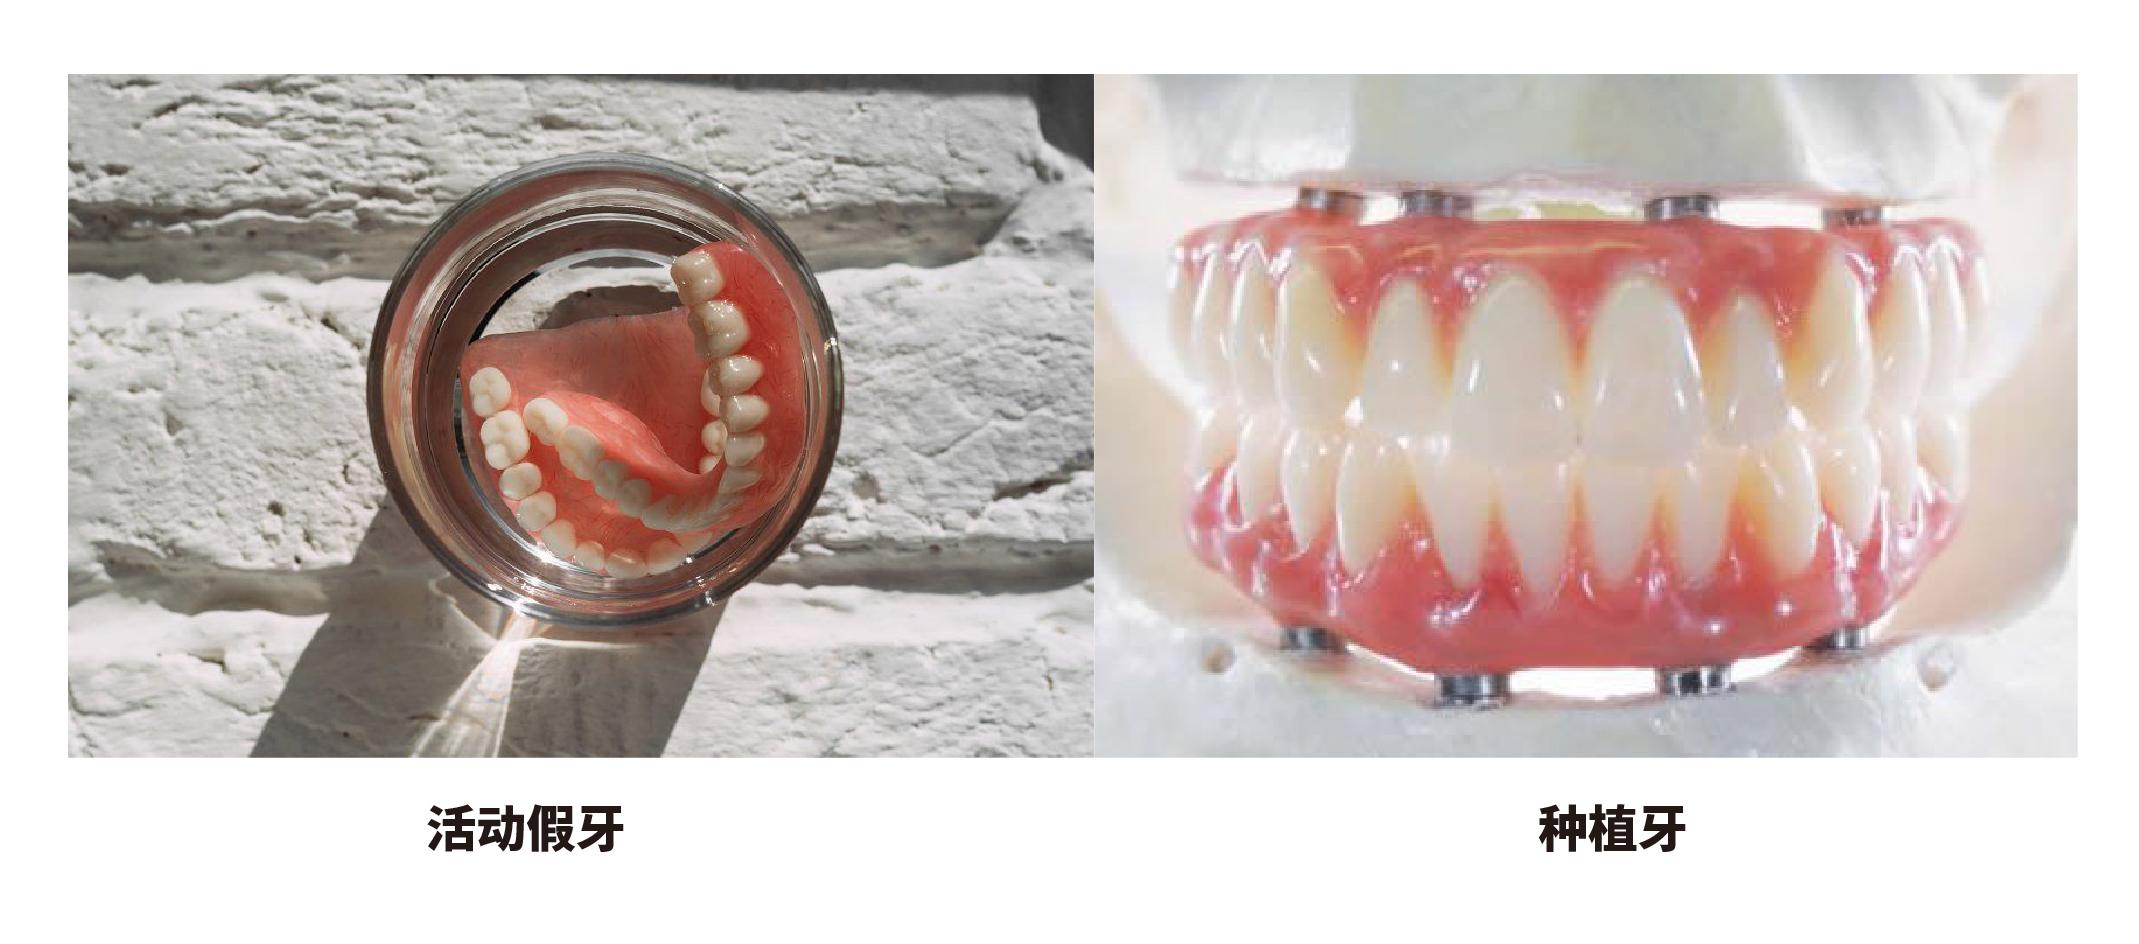 老年人的活动假牙应该如何维护？_口腔修复_口腔修复护理及注意事项 - 好大夫在线